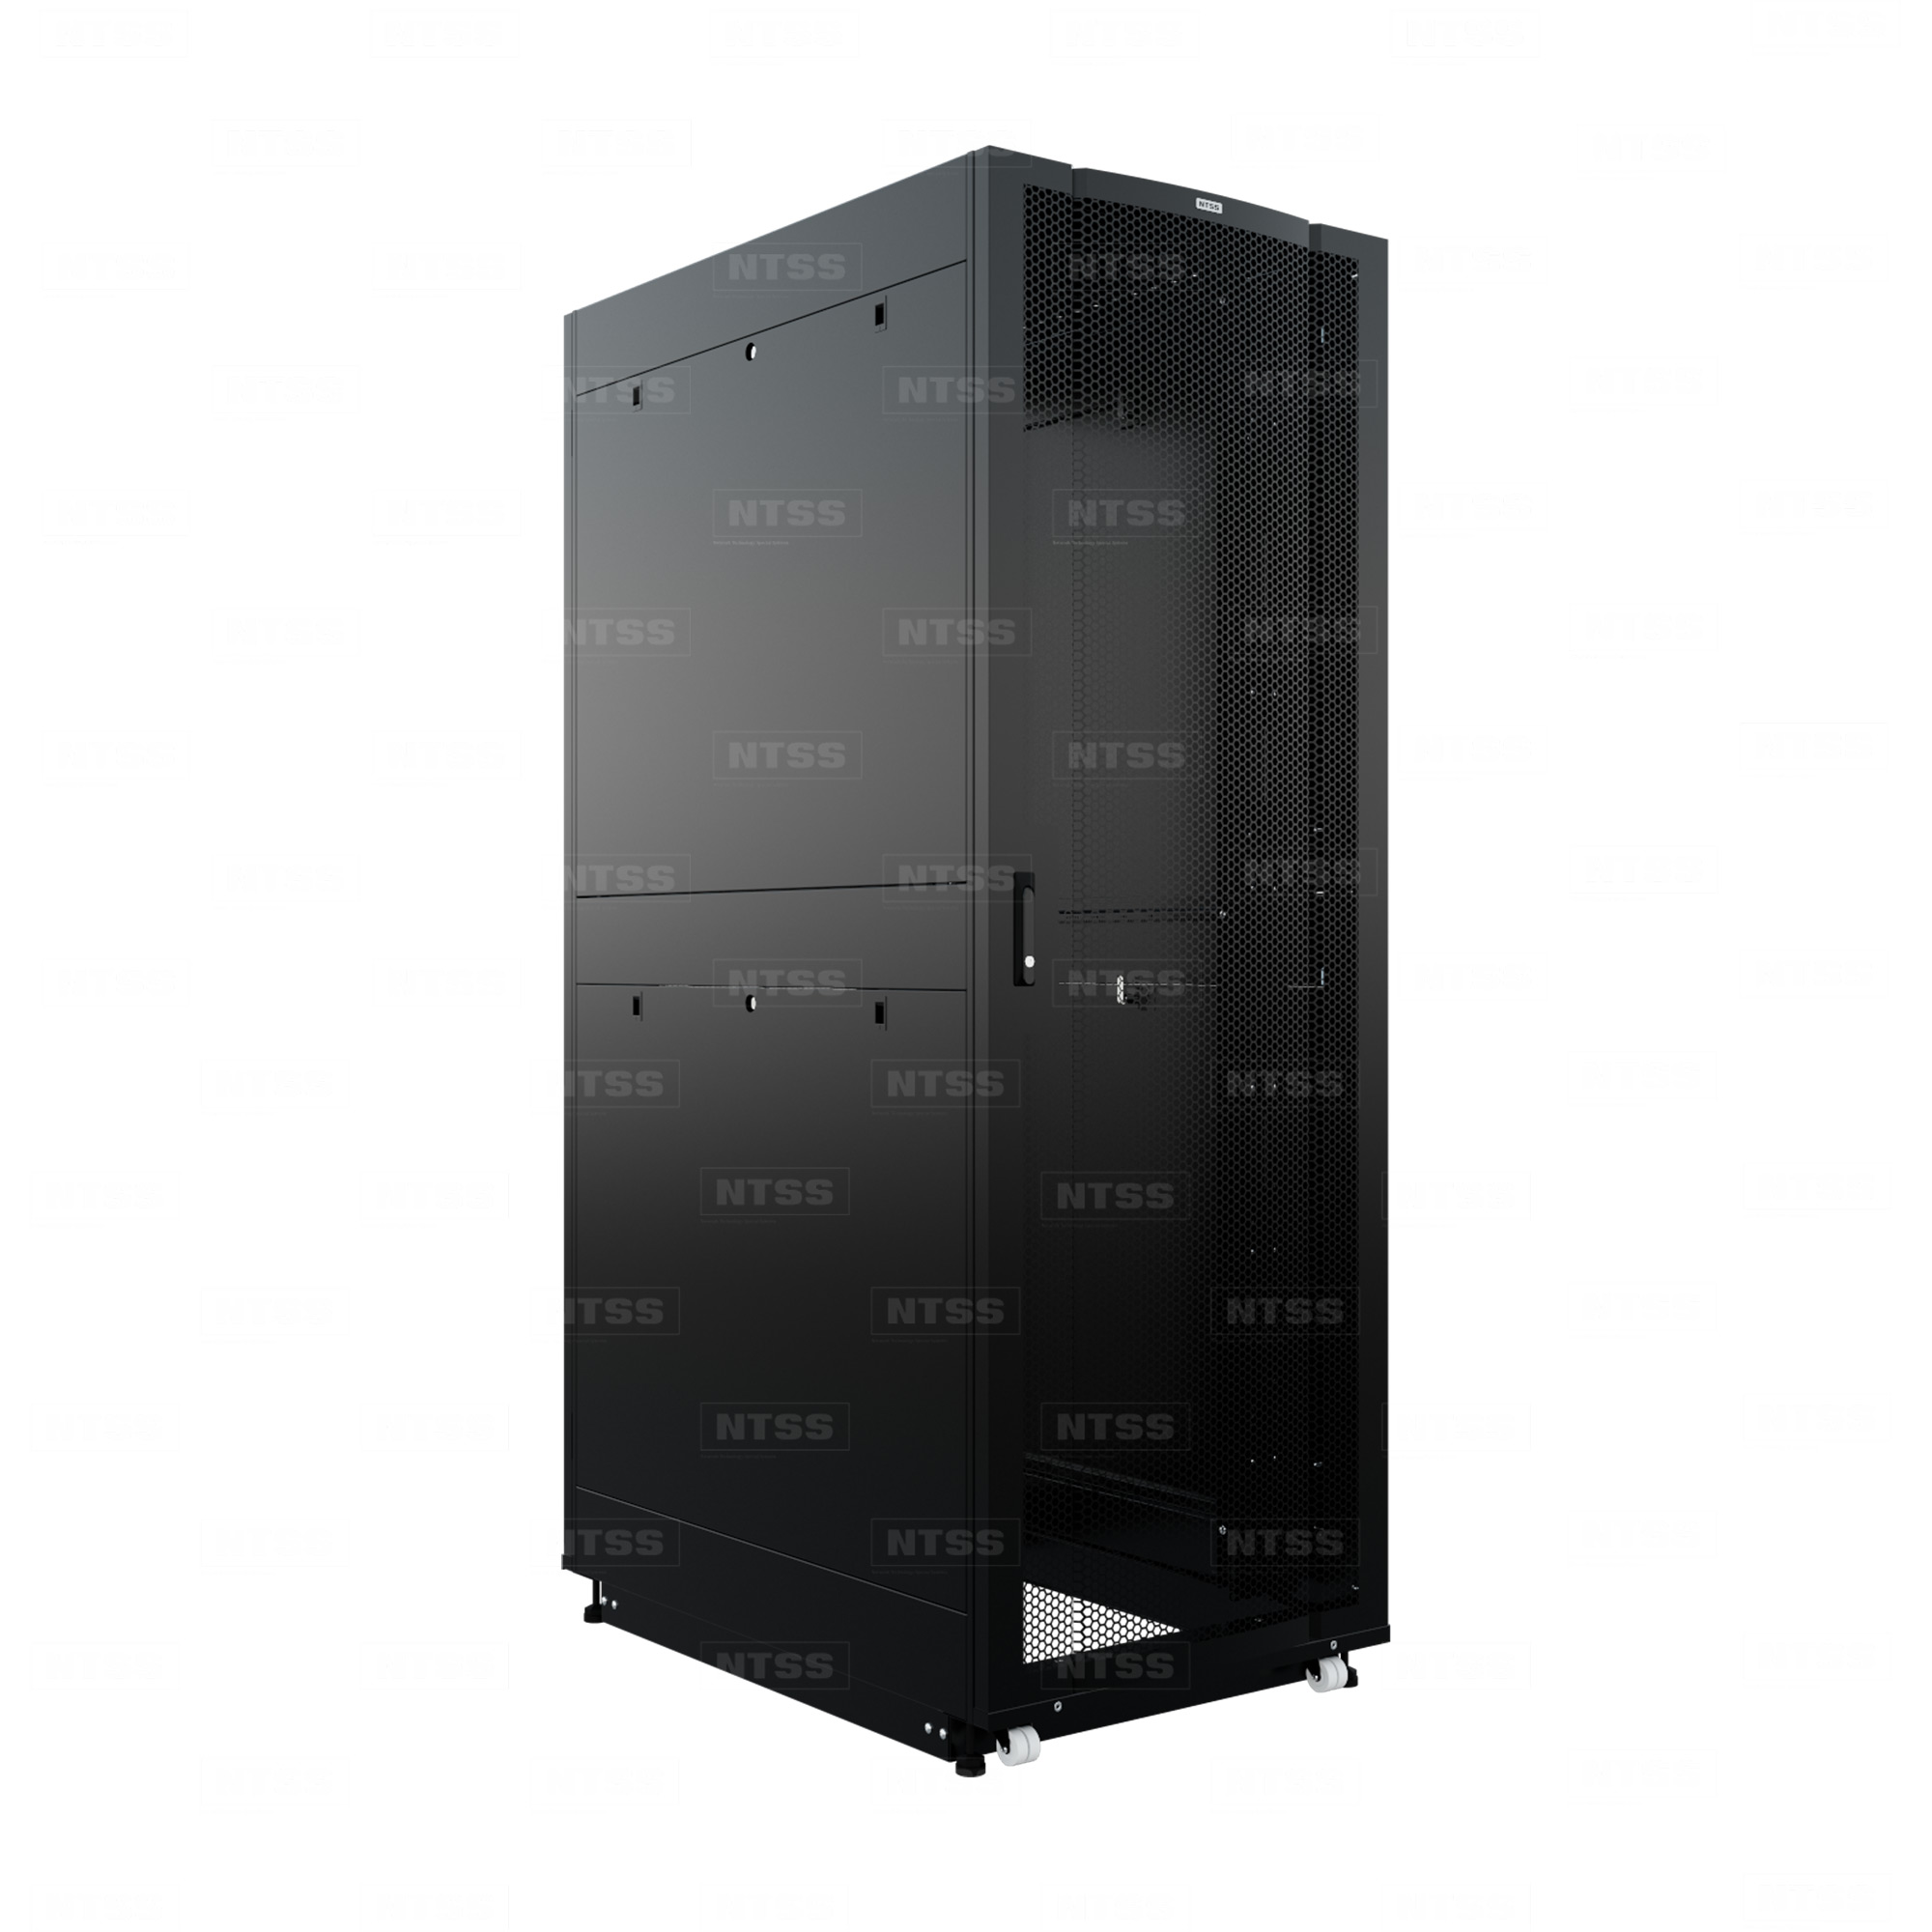 19" Напольный серверный шкаф NTSS ПРОЦОД 32U 800х1200 мм, передняя дверь перфорация, задняя дверь перфорация, боковые стенки, регулируемые опоры, ролики, черный RAL 9005  